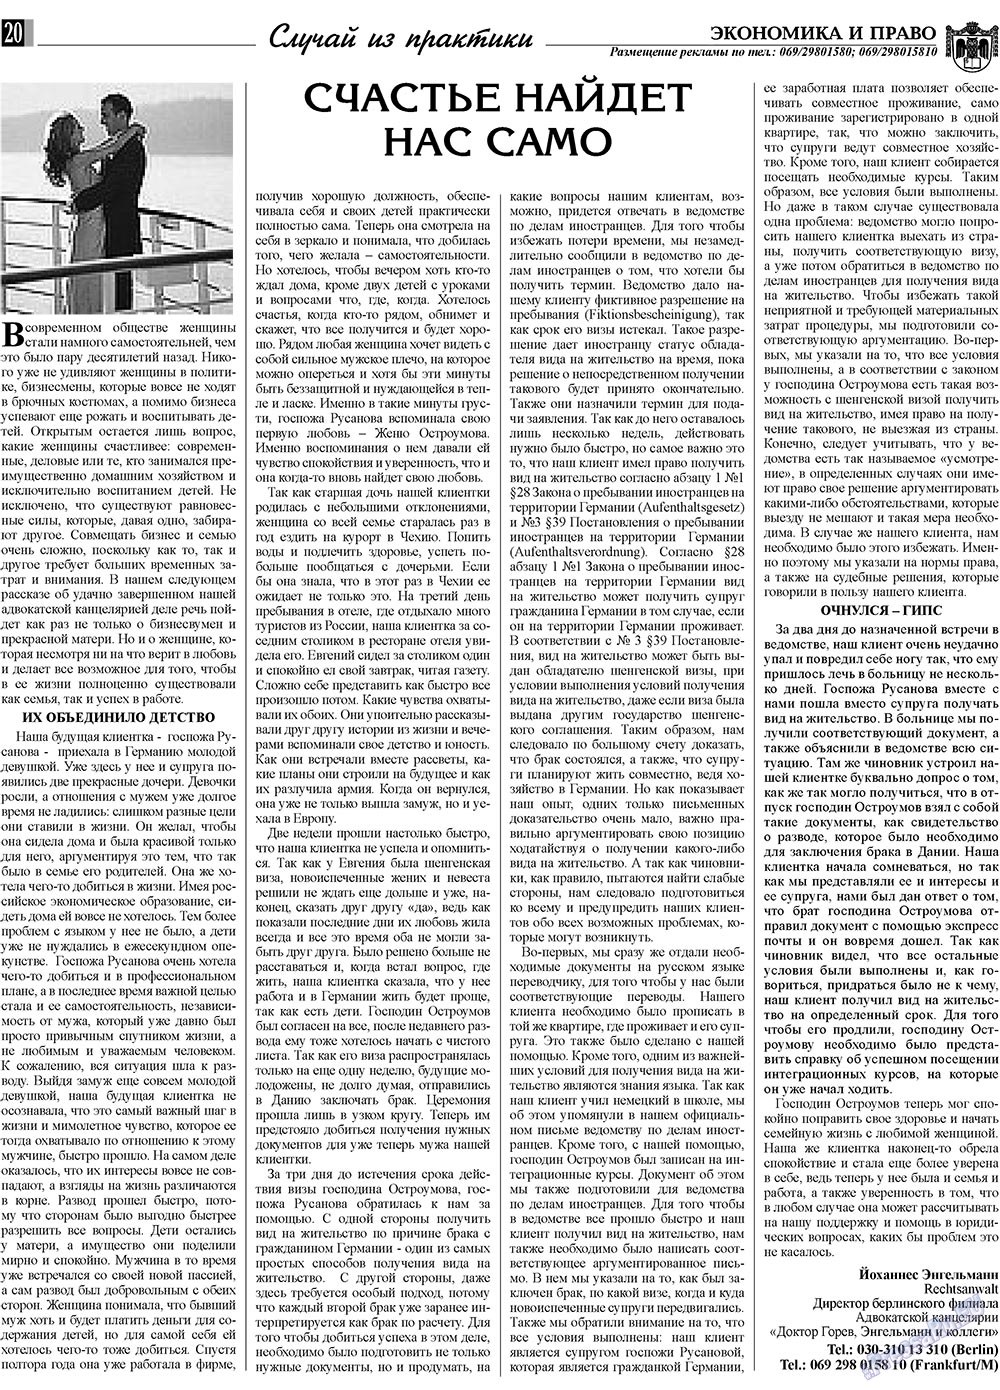 Экономика и право, газета. 2009 №8 стр.20